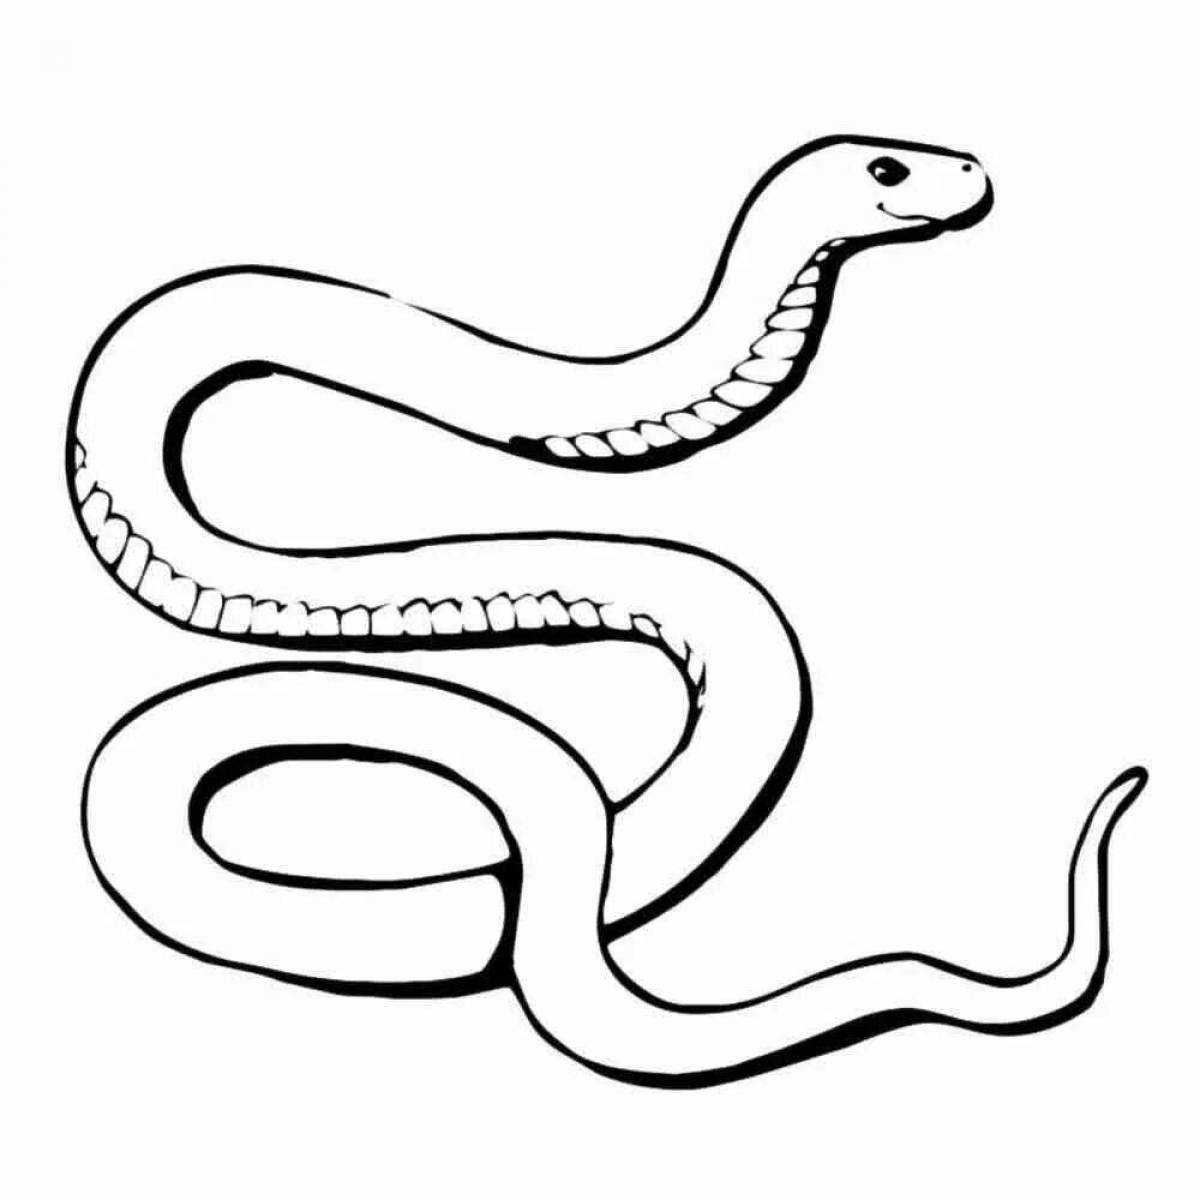 Замысловатая страница раскраски viper